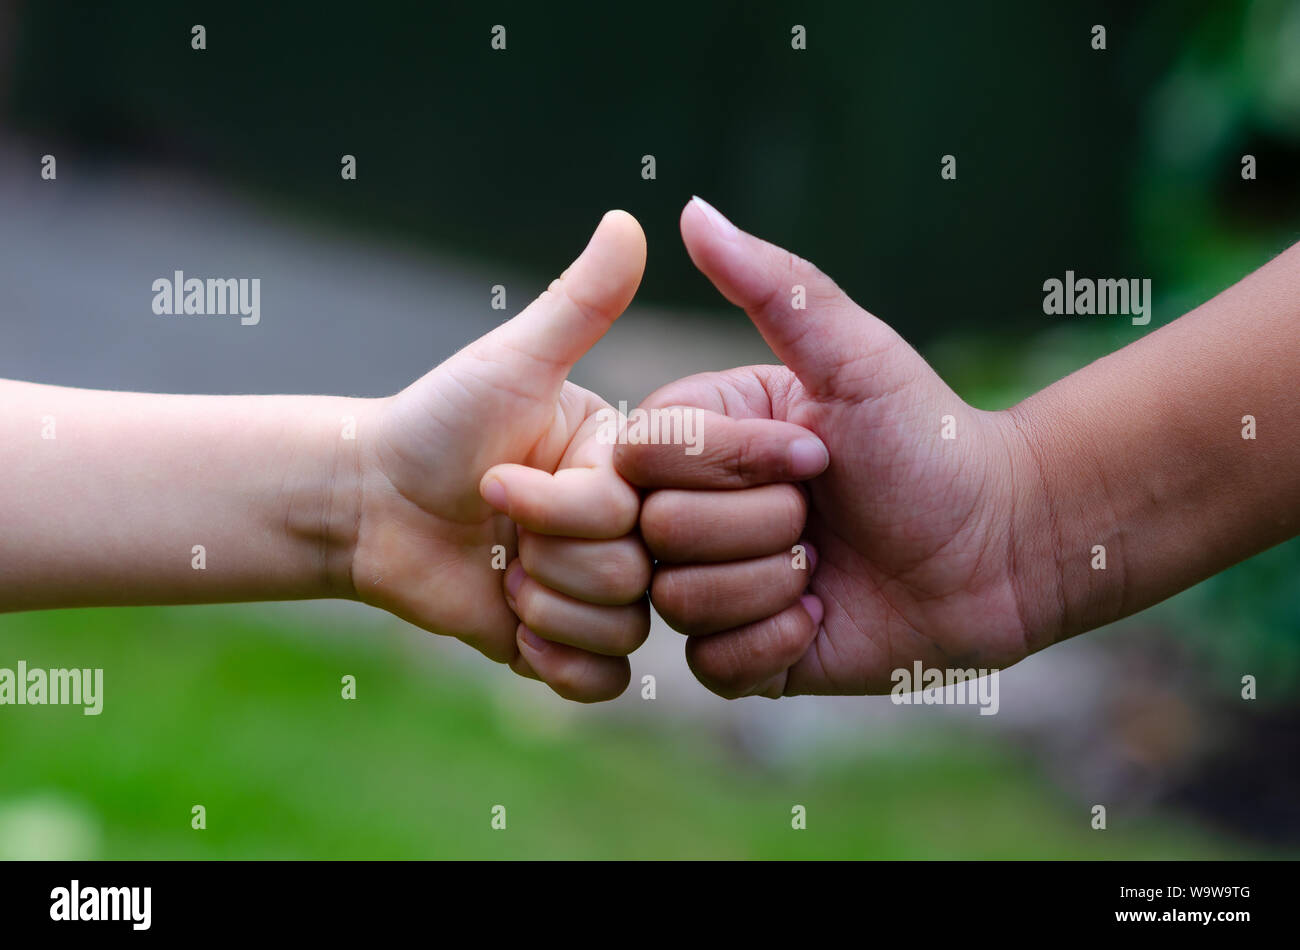 Ragazzo bianco e nero ragazza mostra Thumbs up o " simili " gesto. Foto concettuale esprime l'amicizia, la pace, supporto, uguaglianza e diversità. Foto Stock